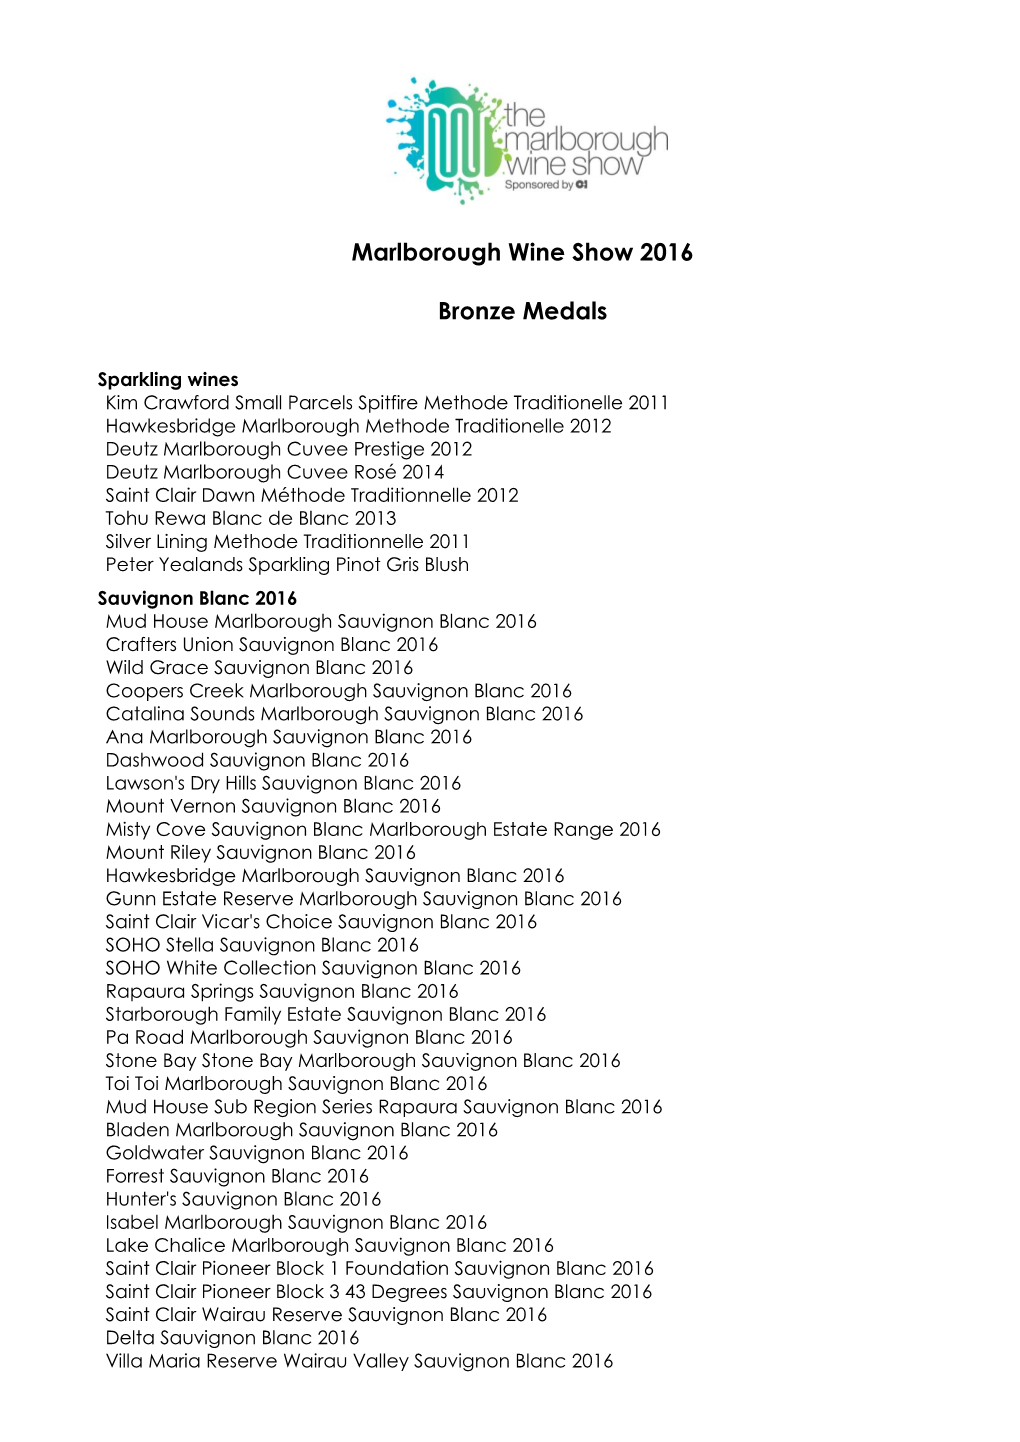 Marlborough Wine Show 2016 Bronze Medals